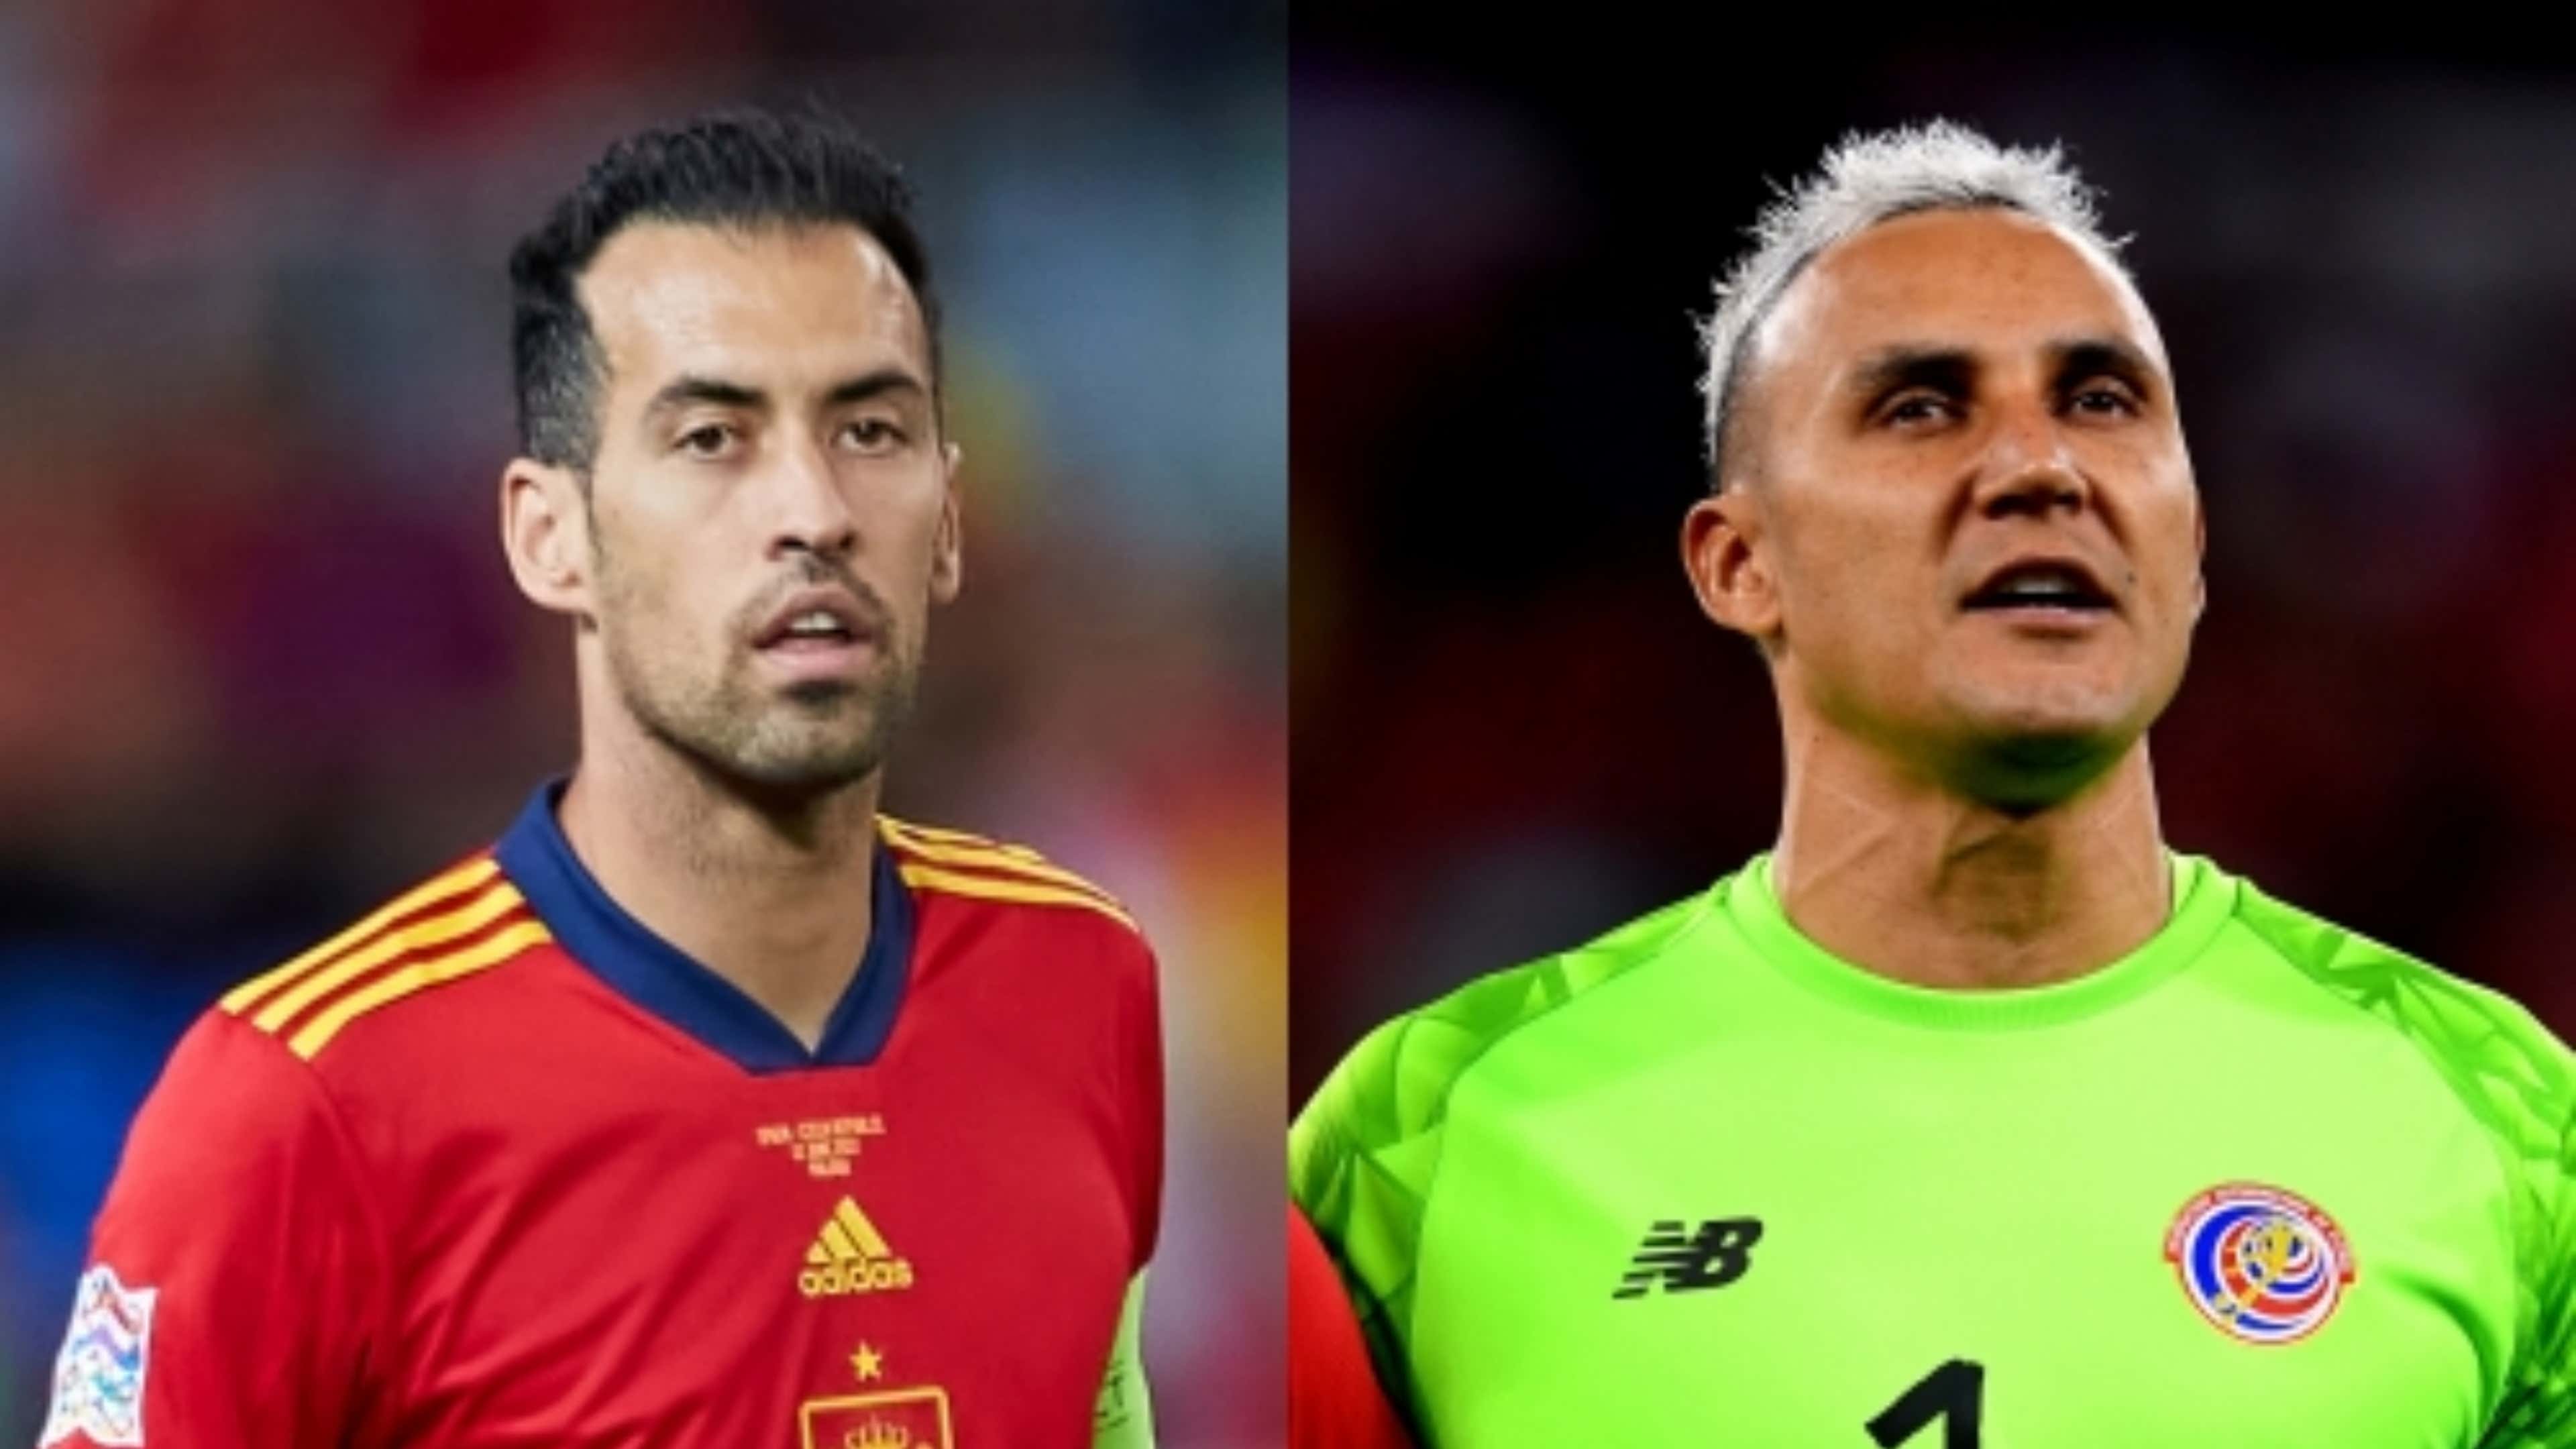 Copa do Mundo: Assista ao vivo e de graça ao jogo Espanha x Costa Rica